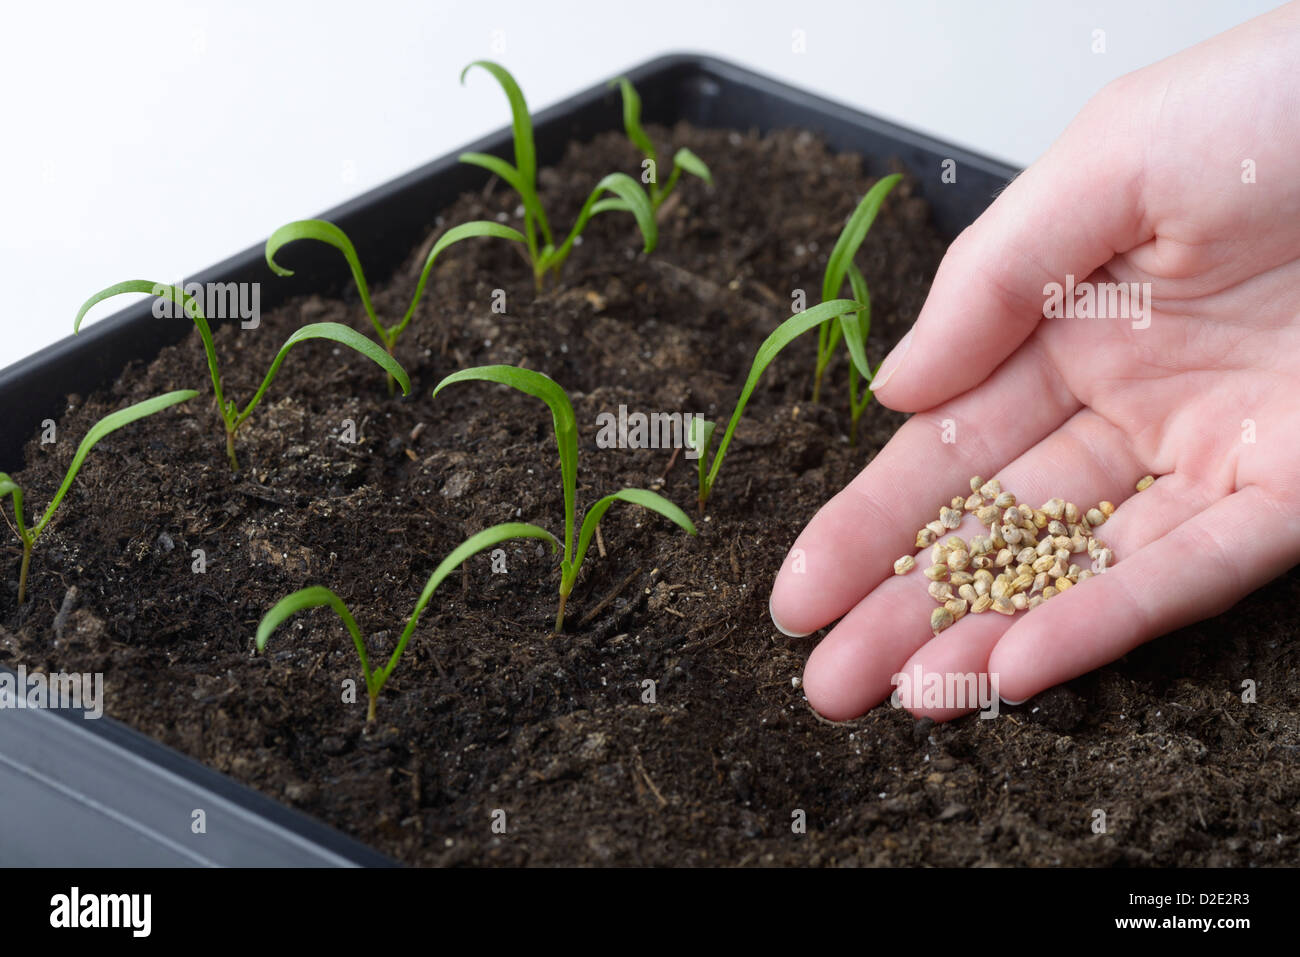 Gli spinaci, Spinacia oleracea, piantine e la persona che mostra i semi di spinaci Foto Stock